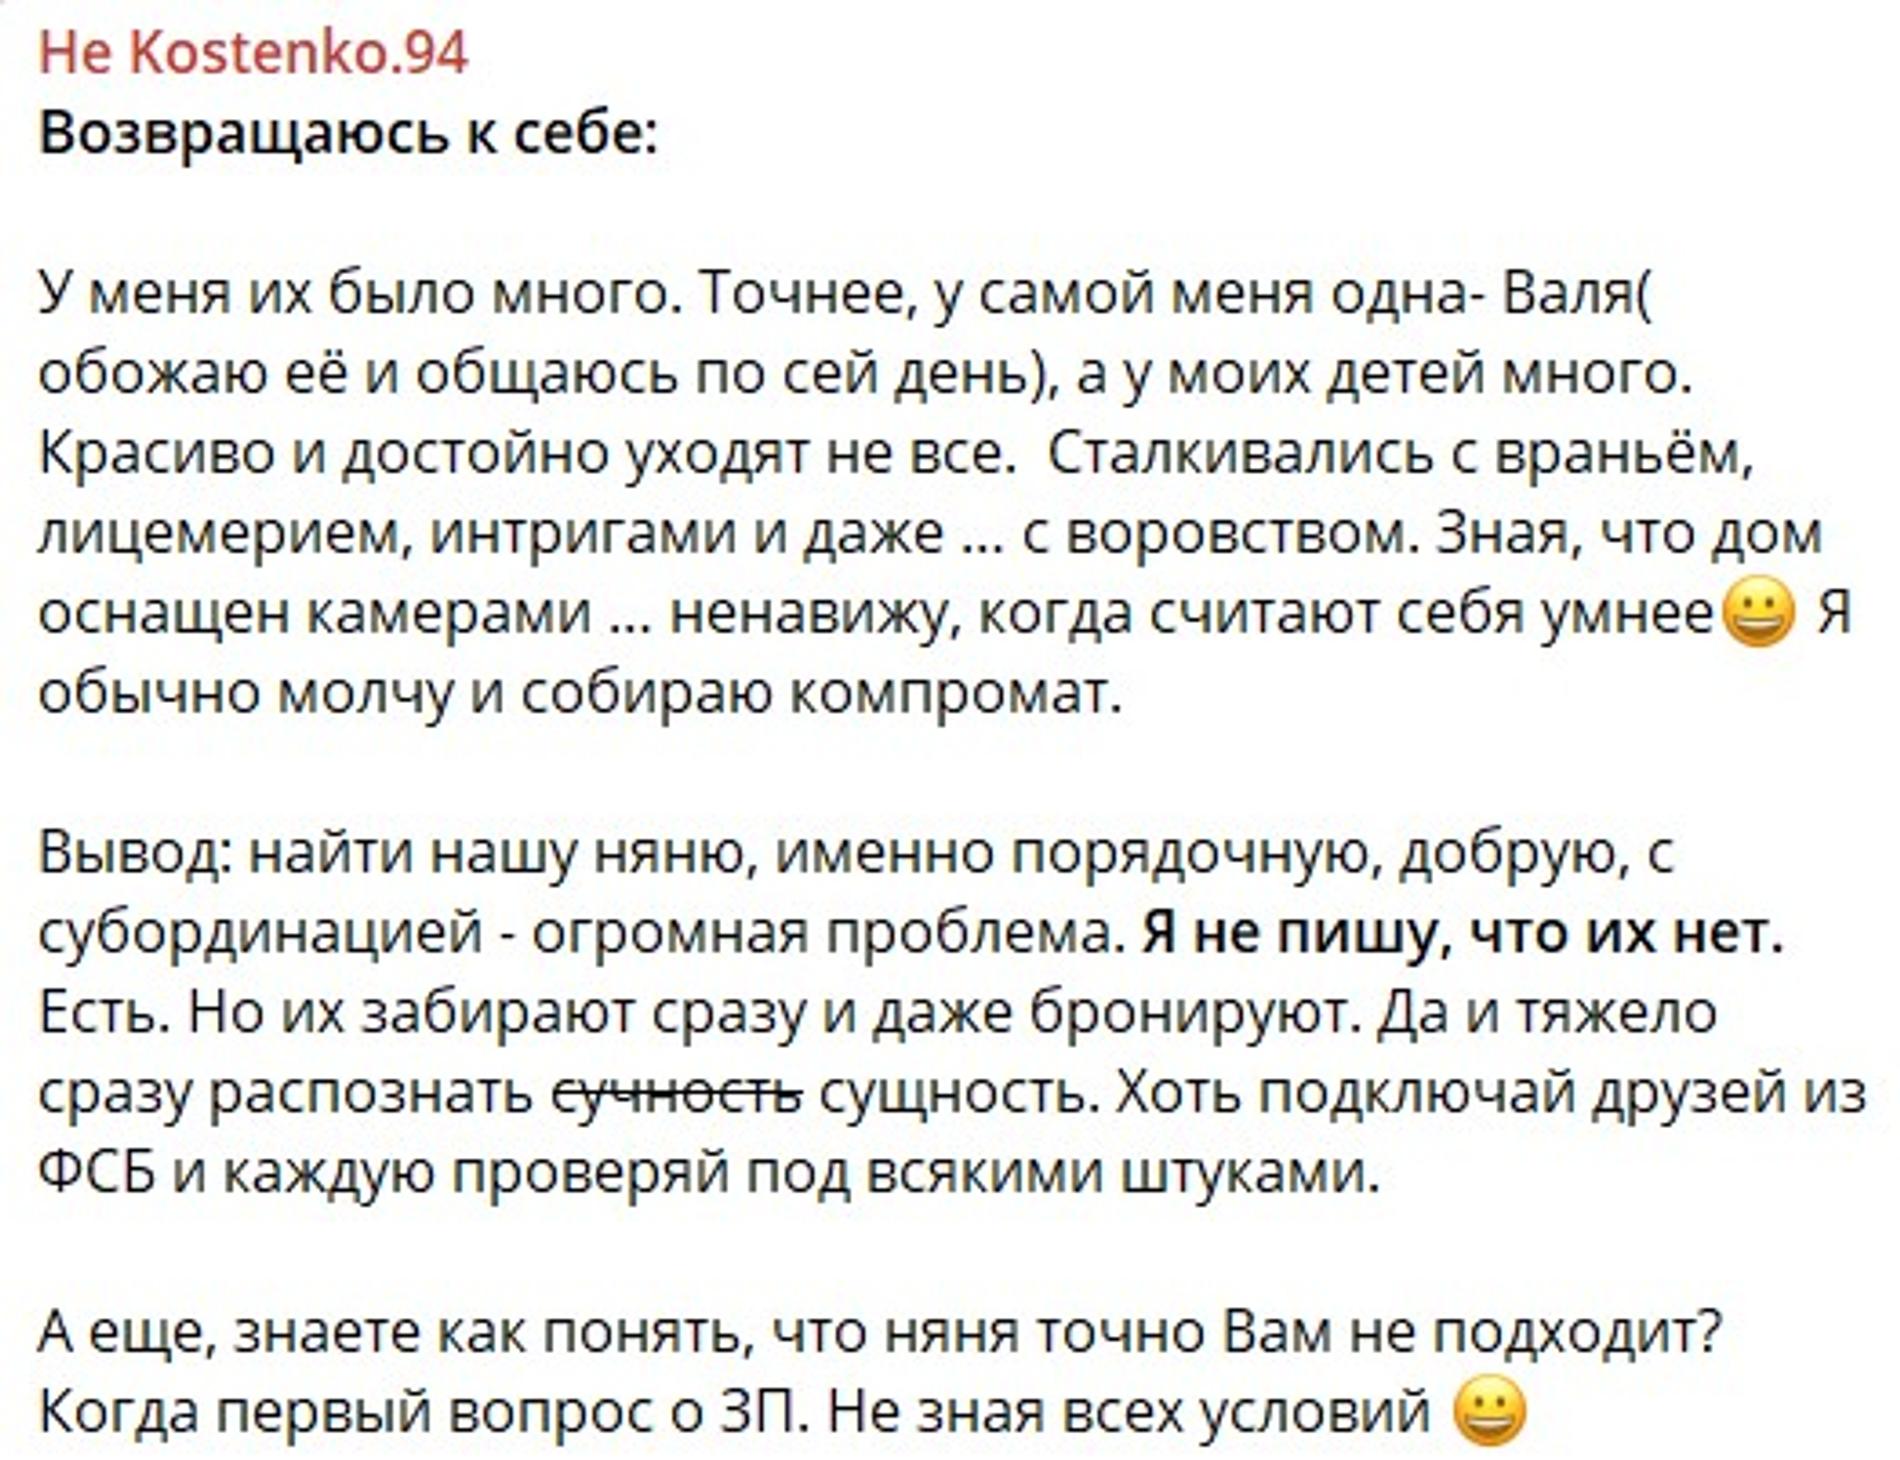 Анастасия Костенко перечислила свои требования к няне и вызвала гнев подписчиков: «Ненавижу, когда считают себя умнее»